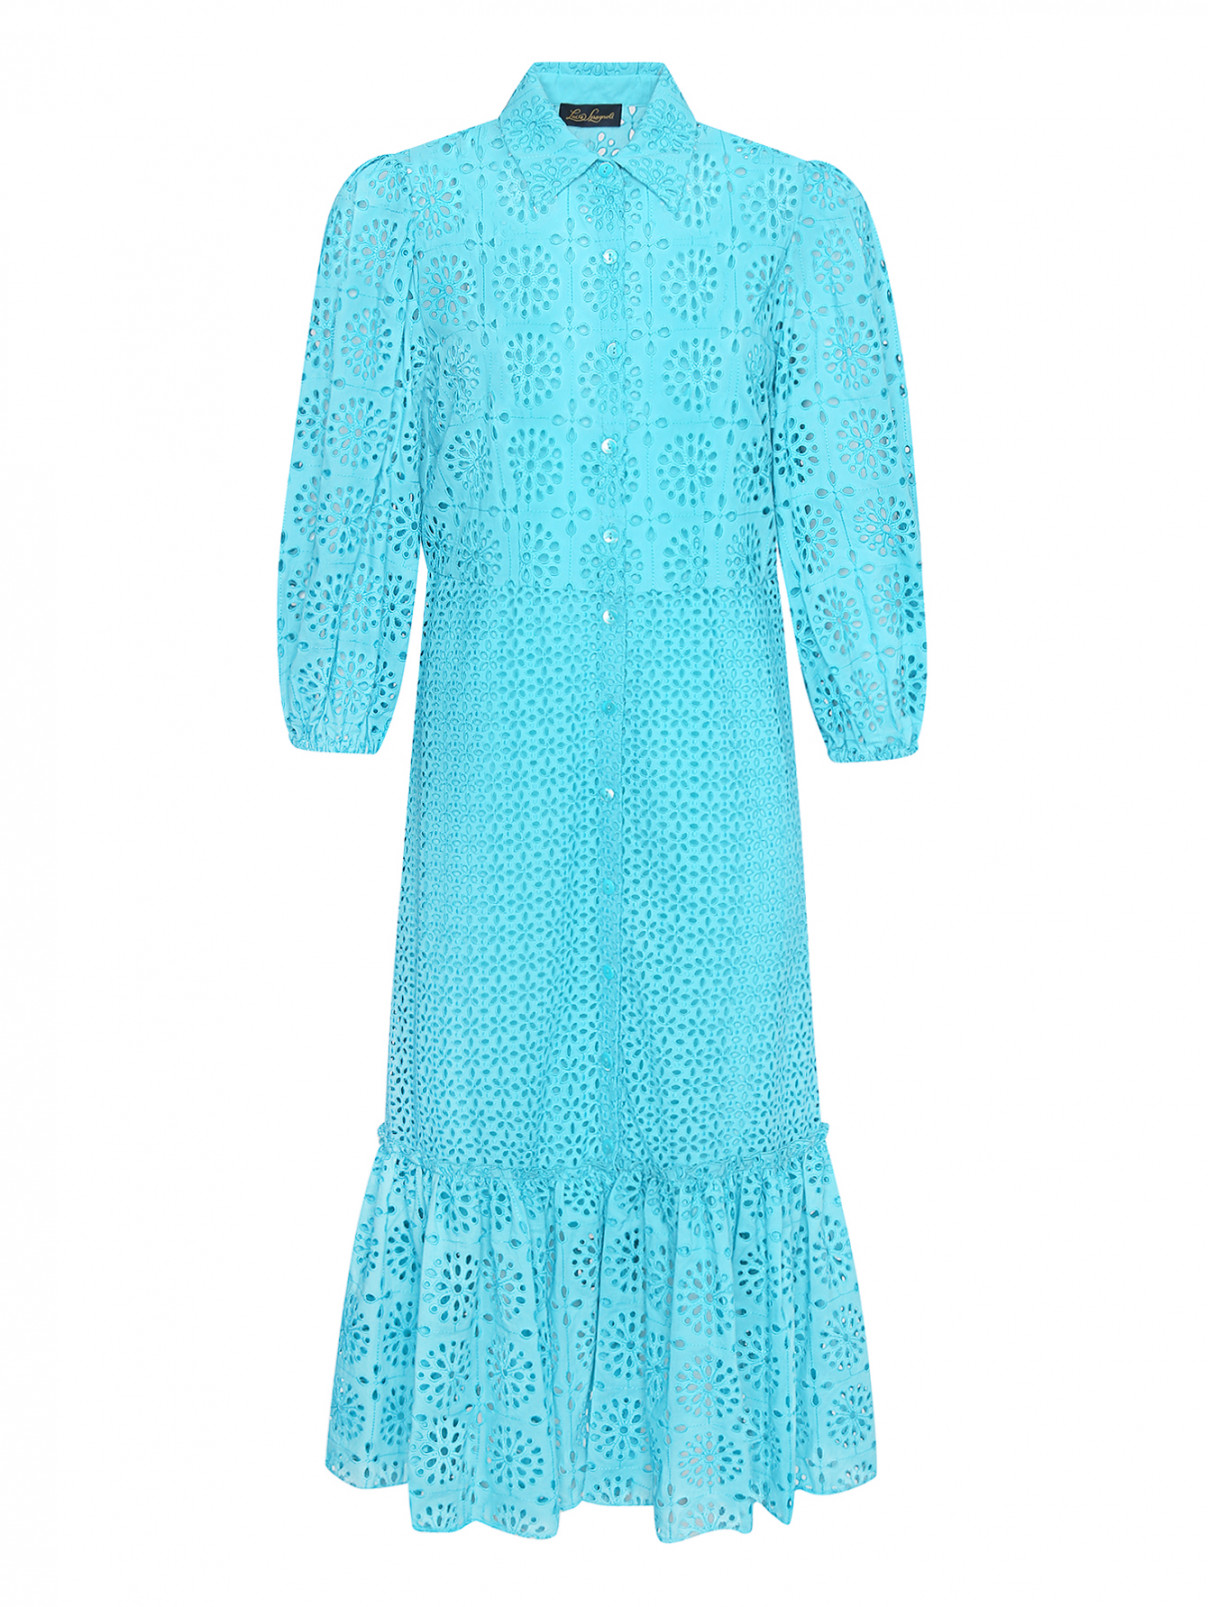 Хлопковое платье из шитья Luisa Spagnoli  –  Общий вид  – Цвет:  Синий